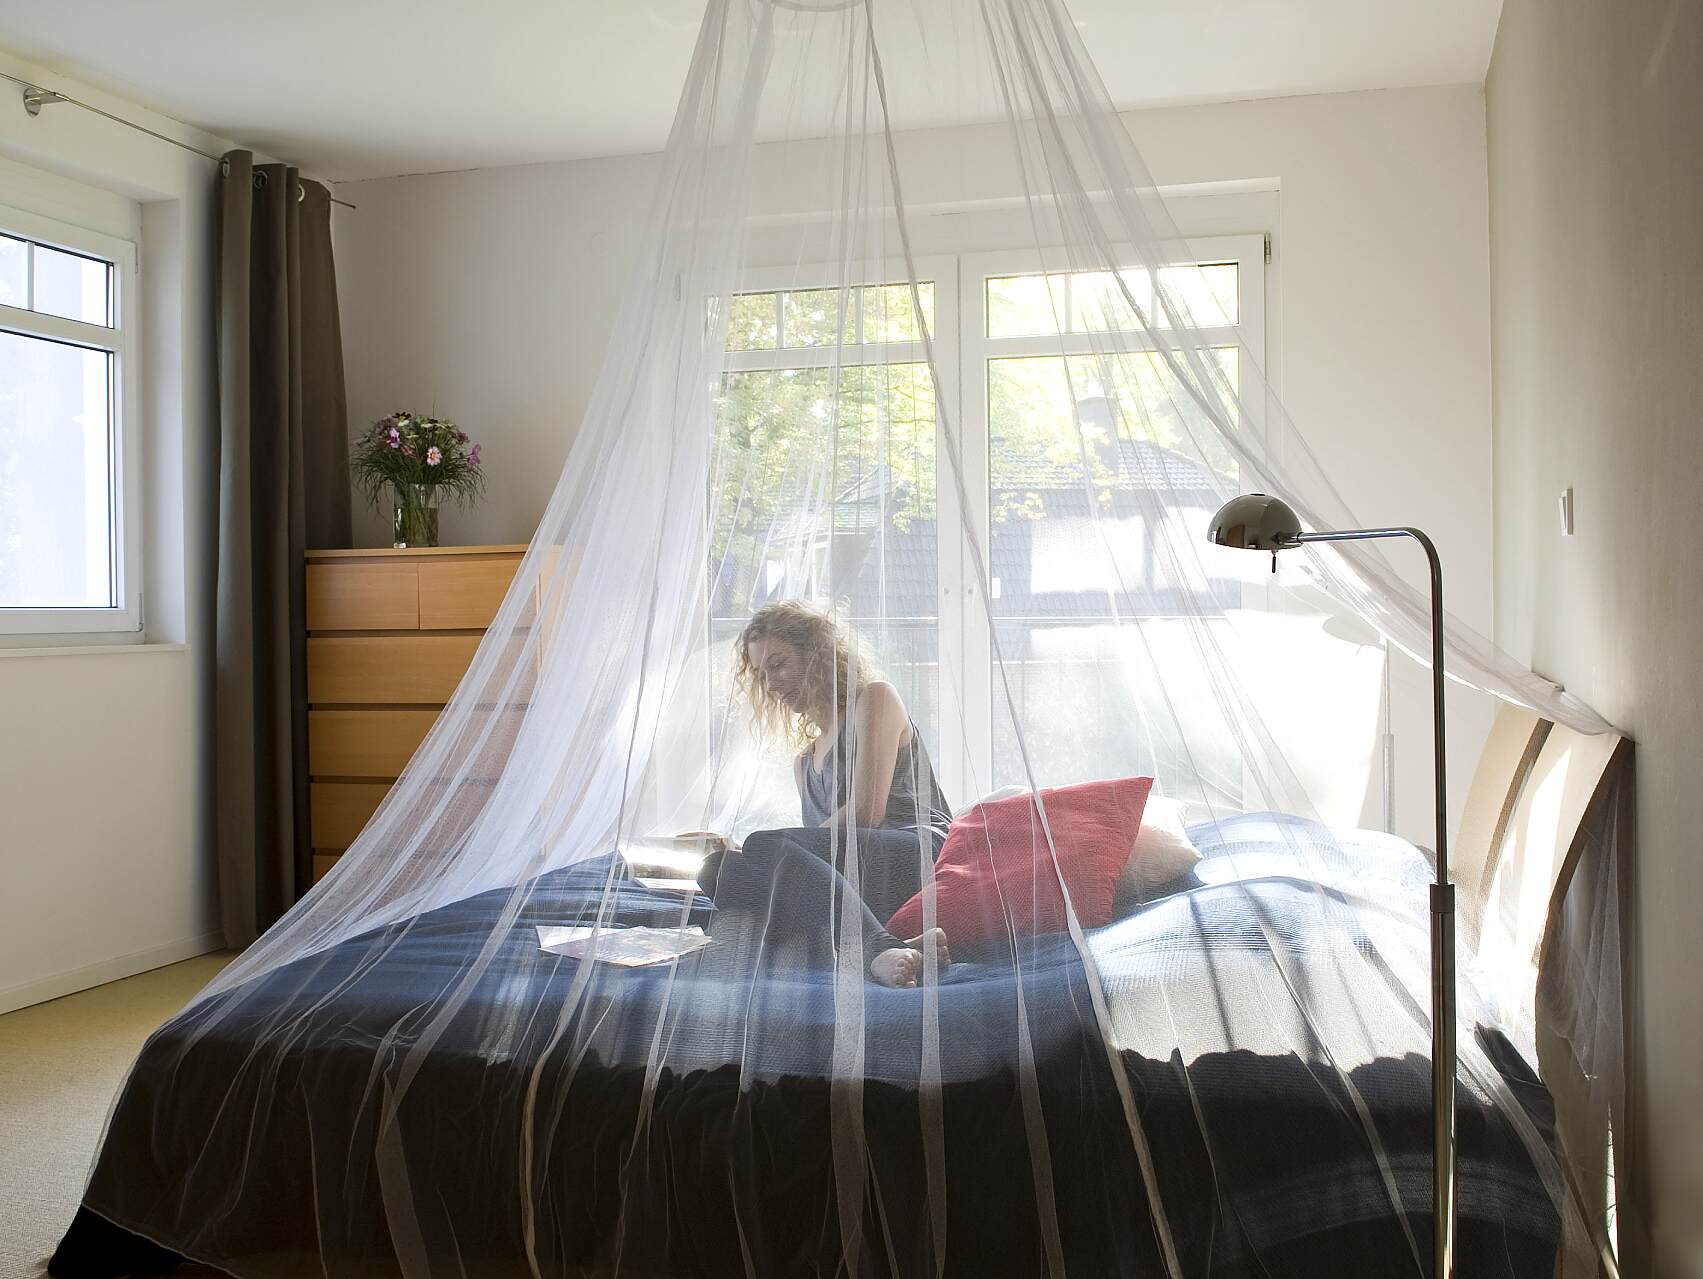 Reise Moskitonetz Reisen Mückennetz für Bett Einzelbett Doppelbett